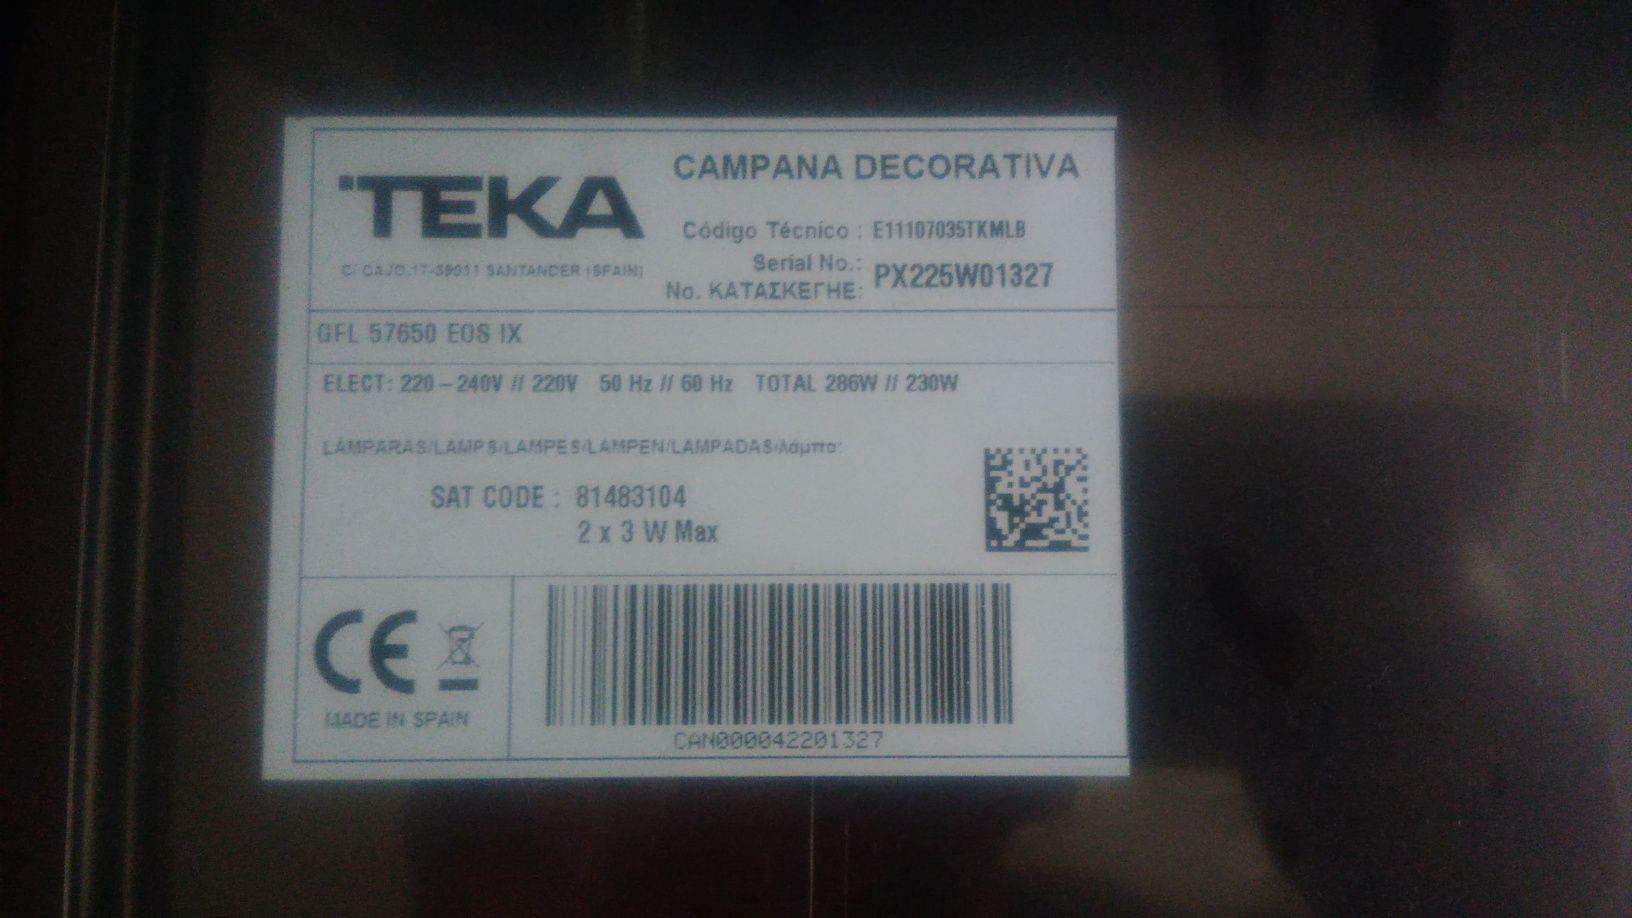 Exaustor Teka na caixa gfl57650 eos ix